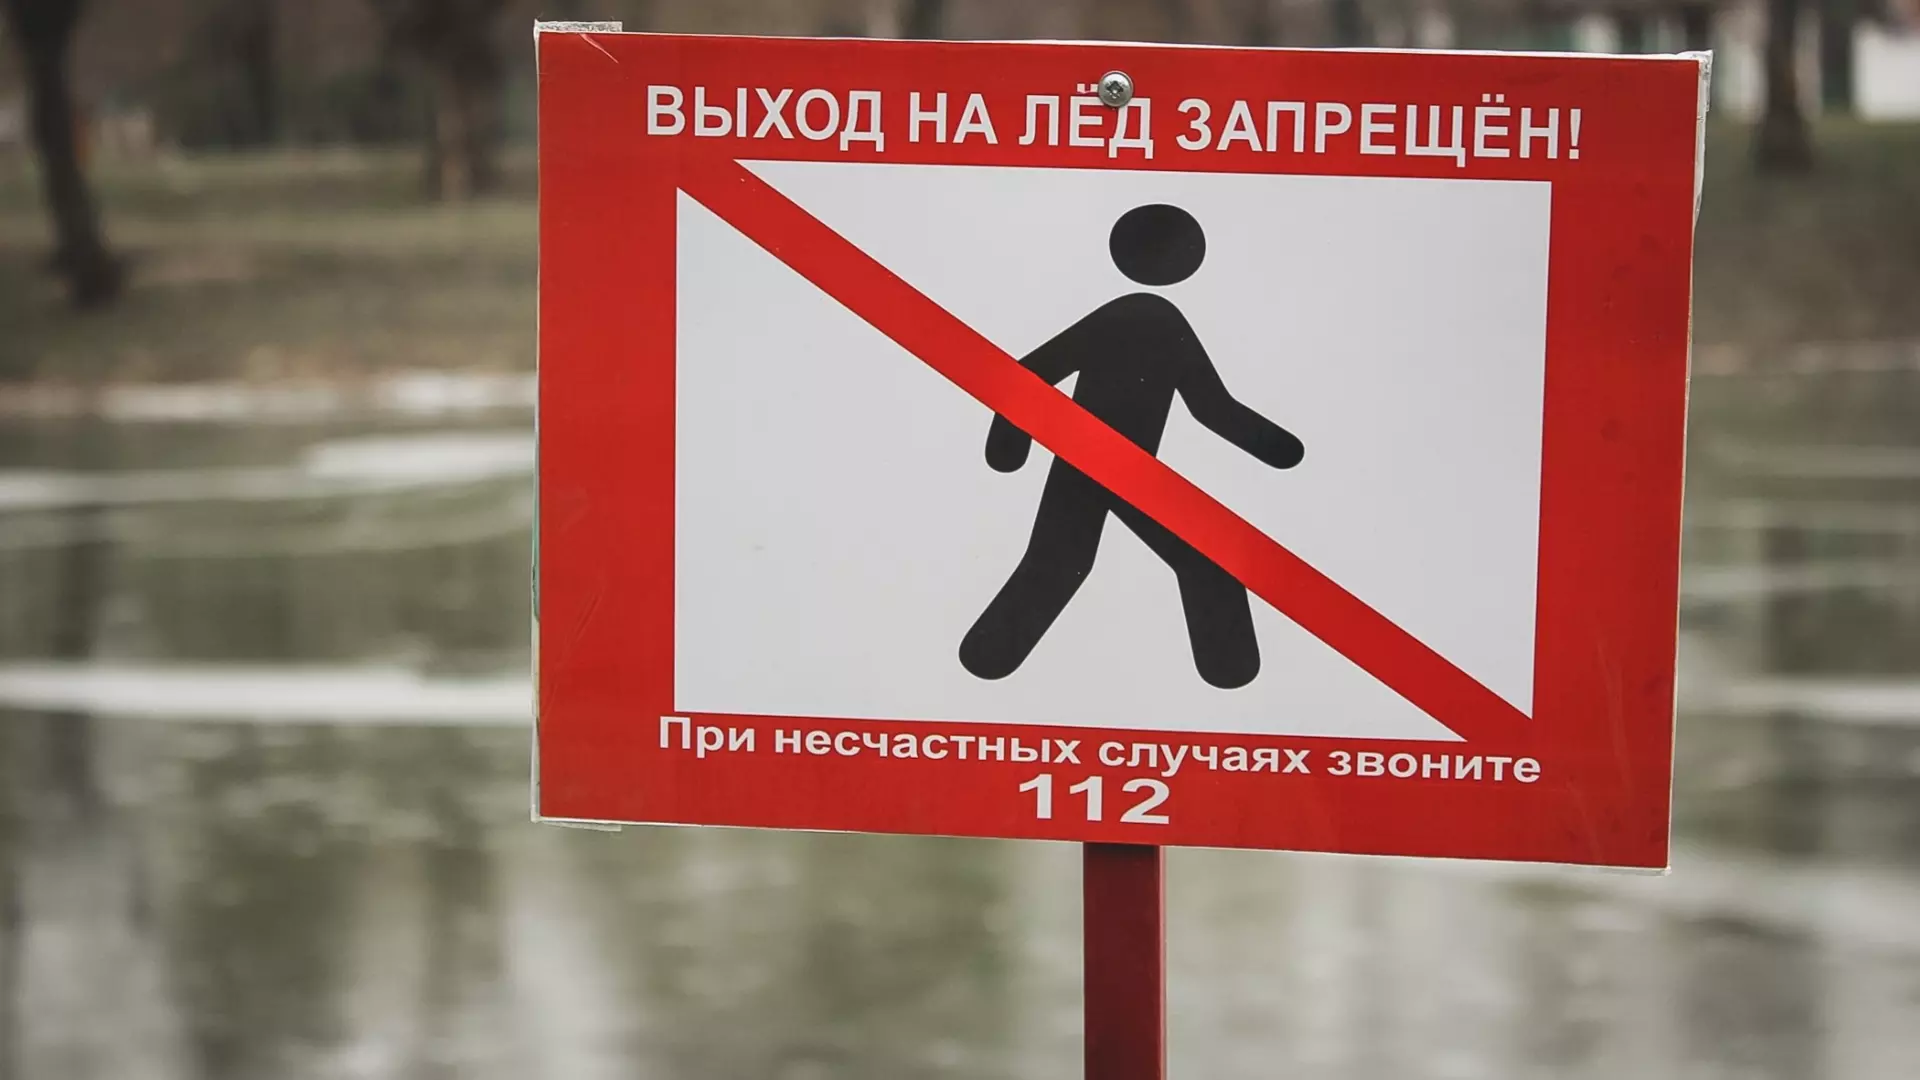 Тело мужчины нашли в воде Каменного карьера в Челябинске